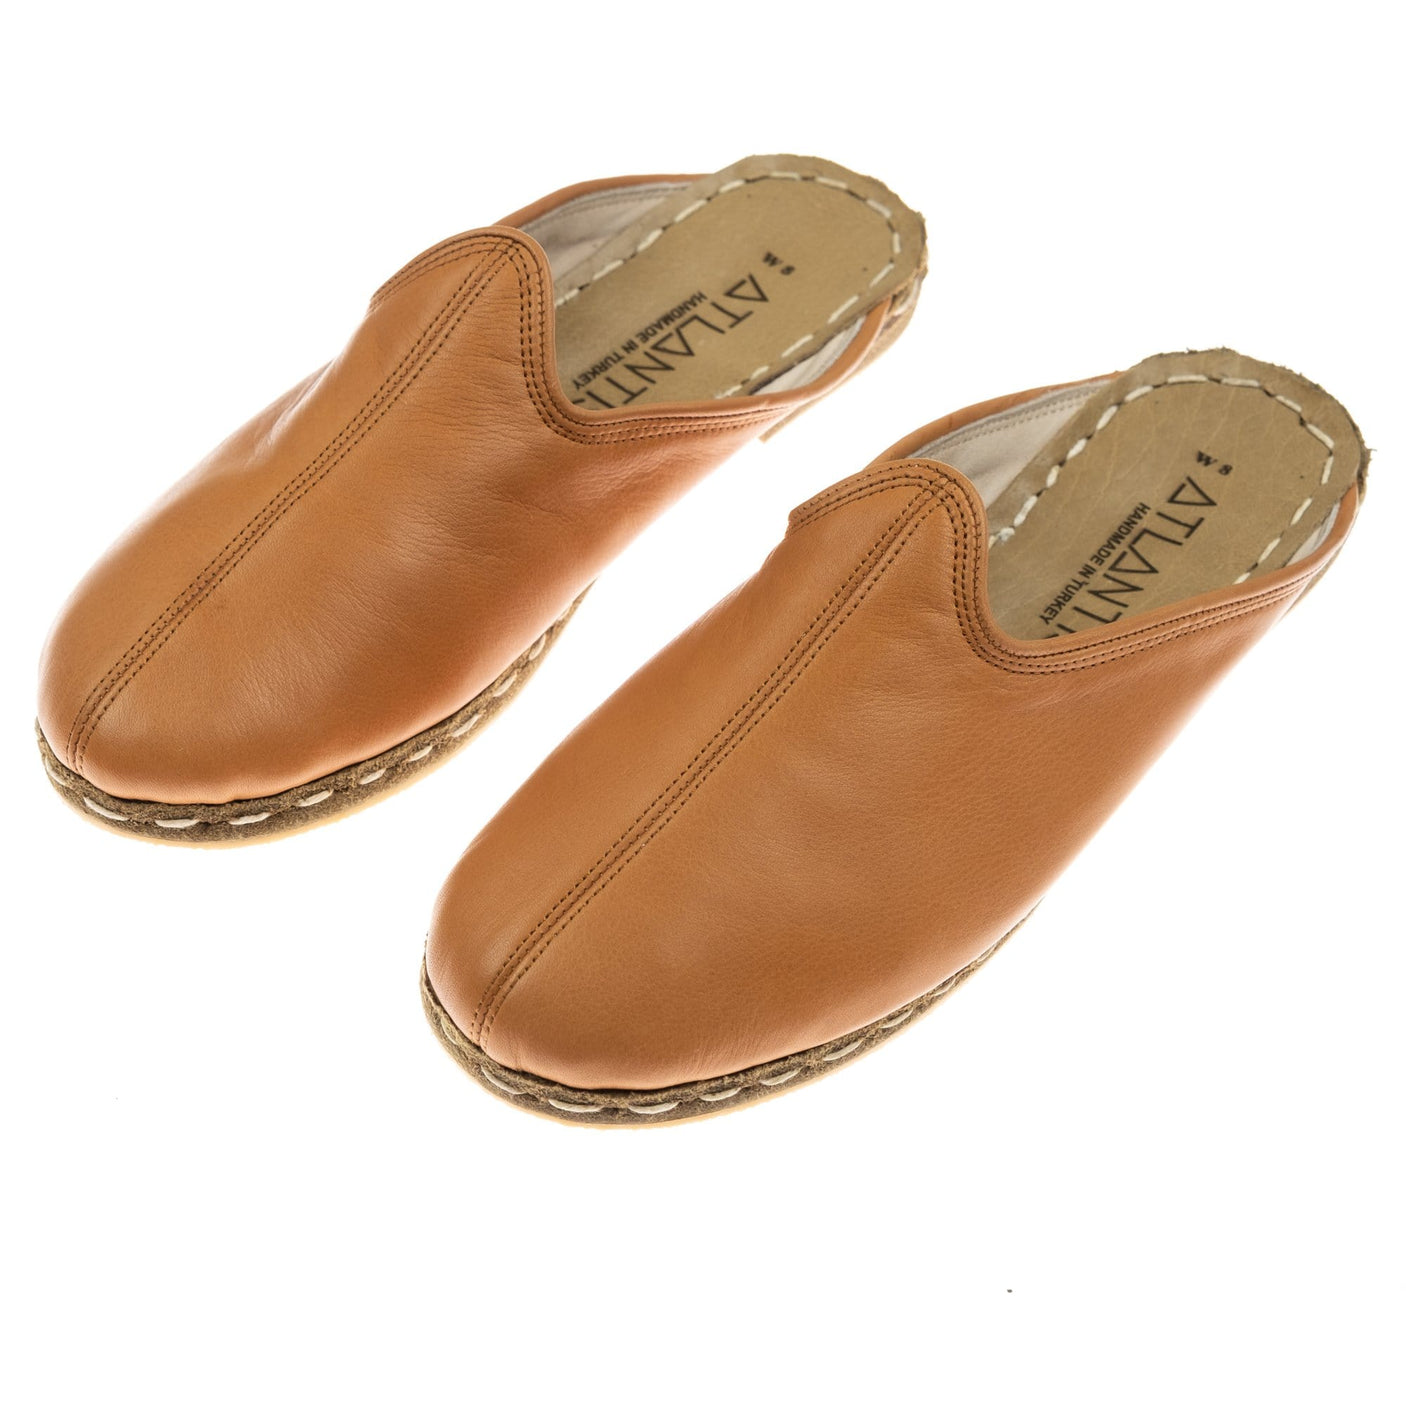 Coconut Slippers - Turkish Slippers for Women & Men : Atlantis Handmade Shoes